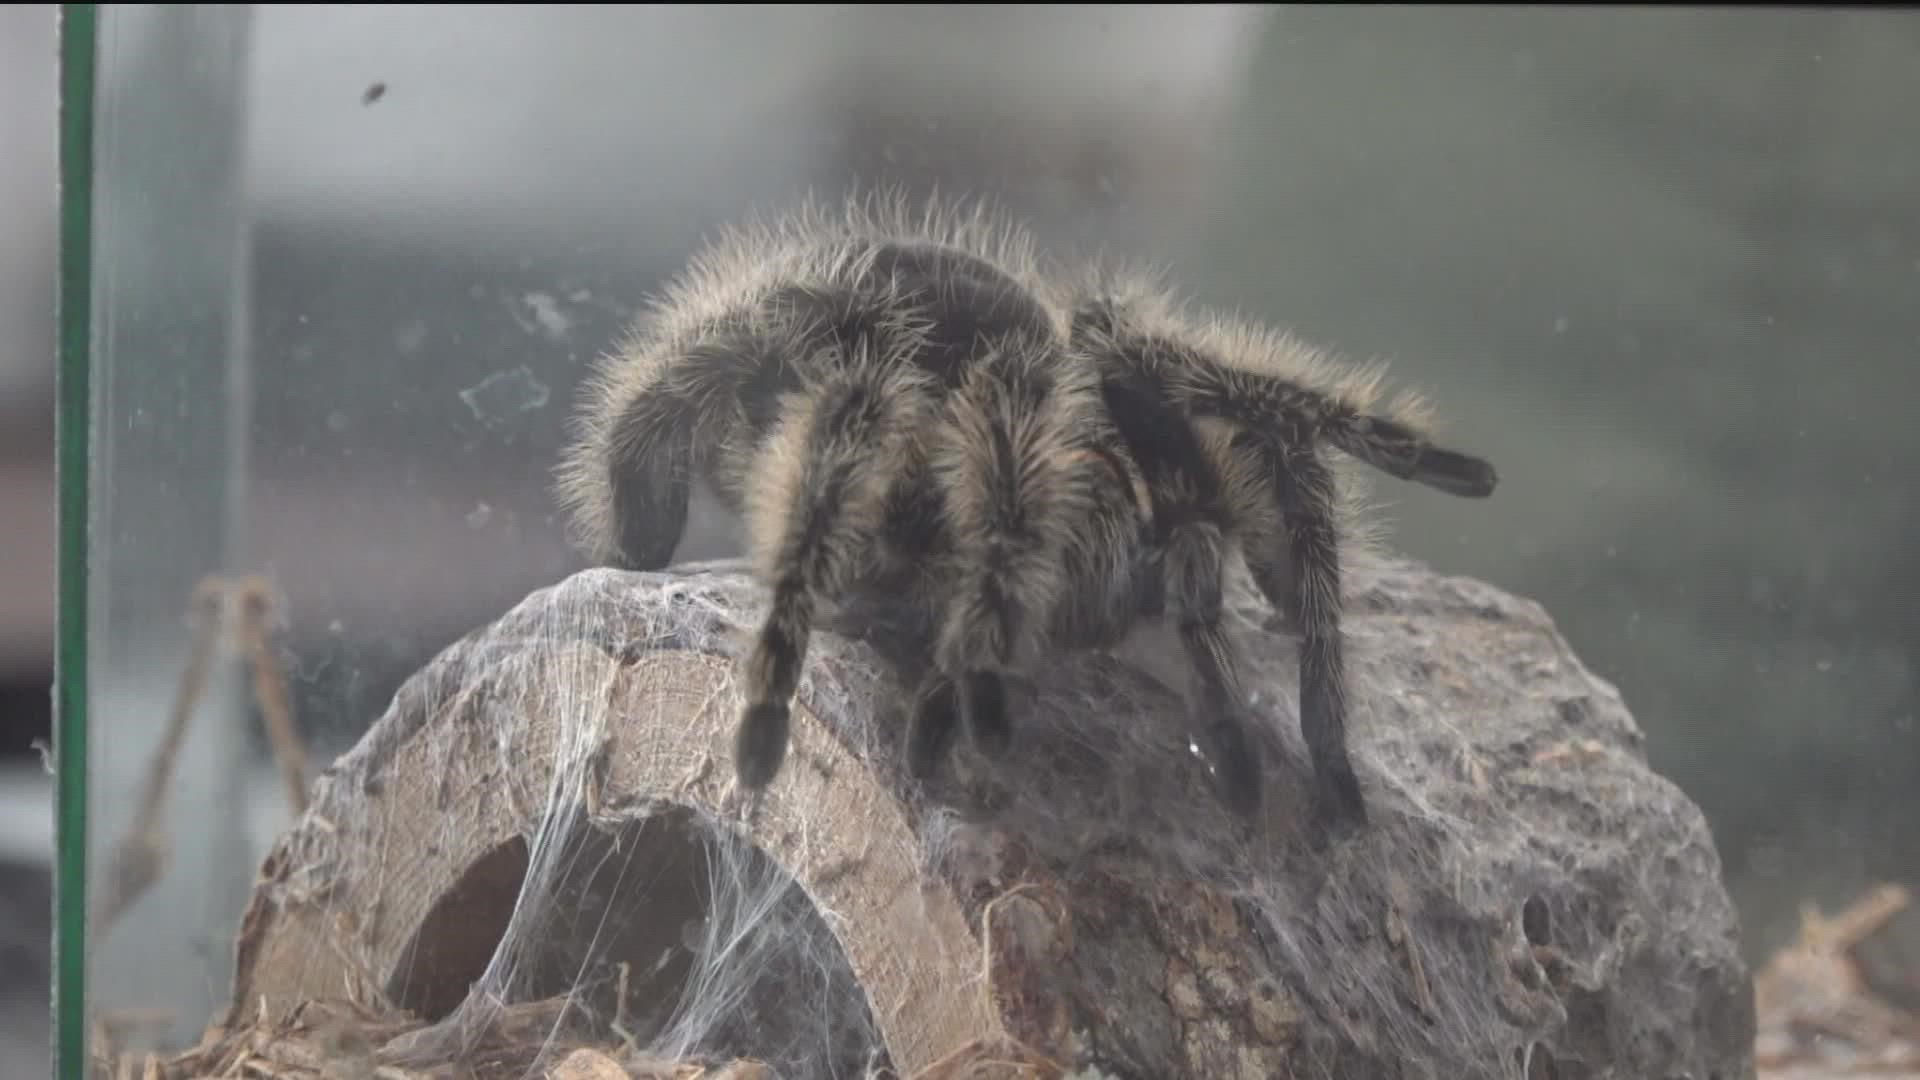 pet tarantulas bite